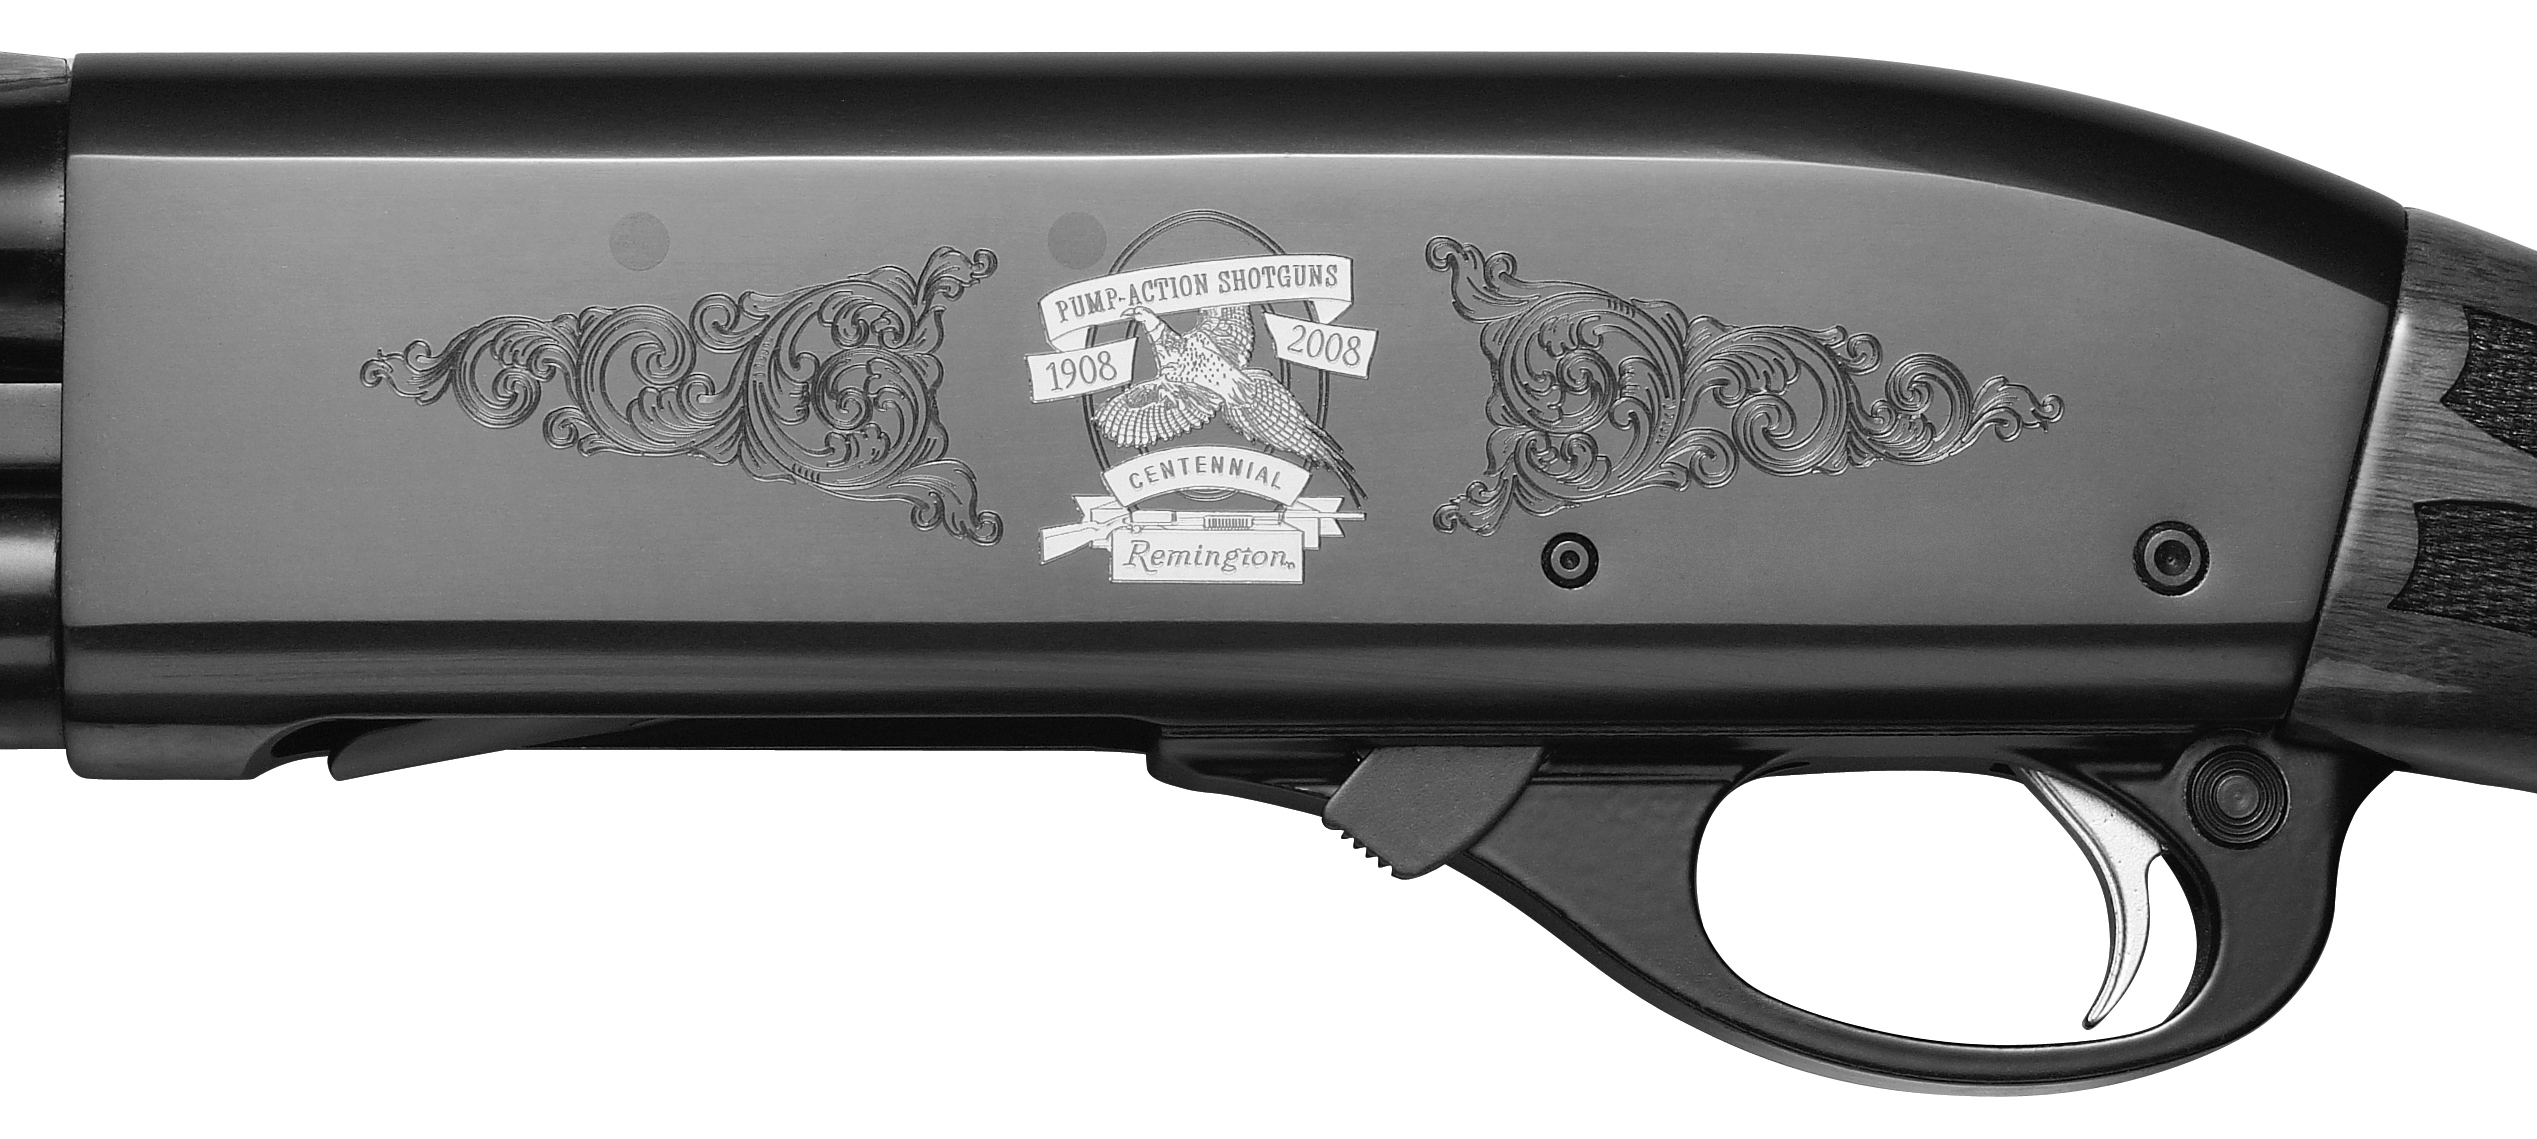 remington gun dating